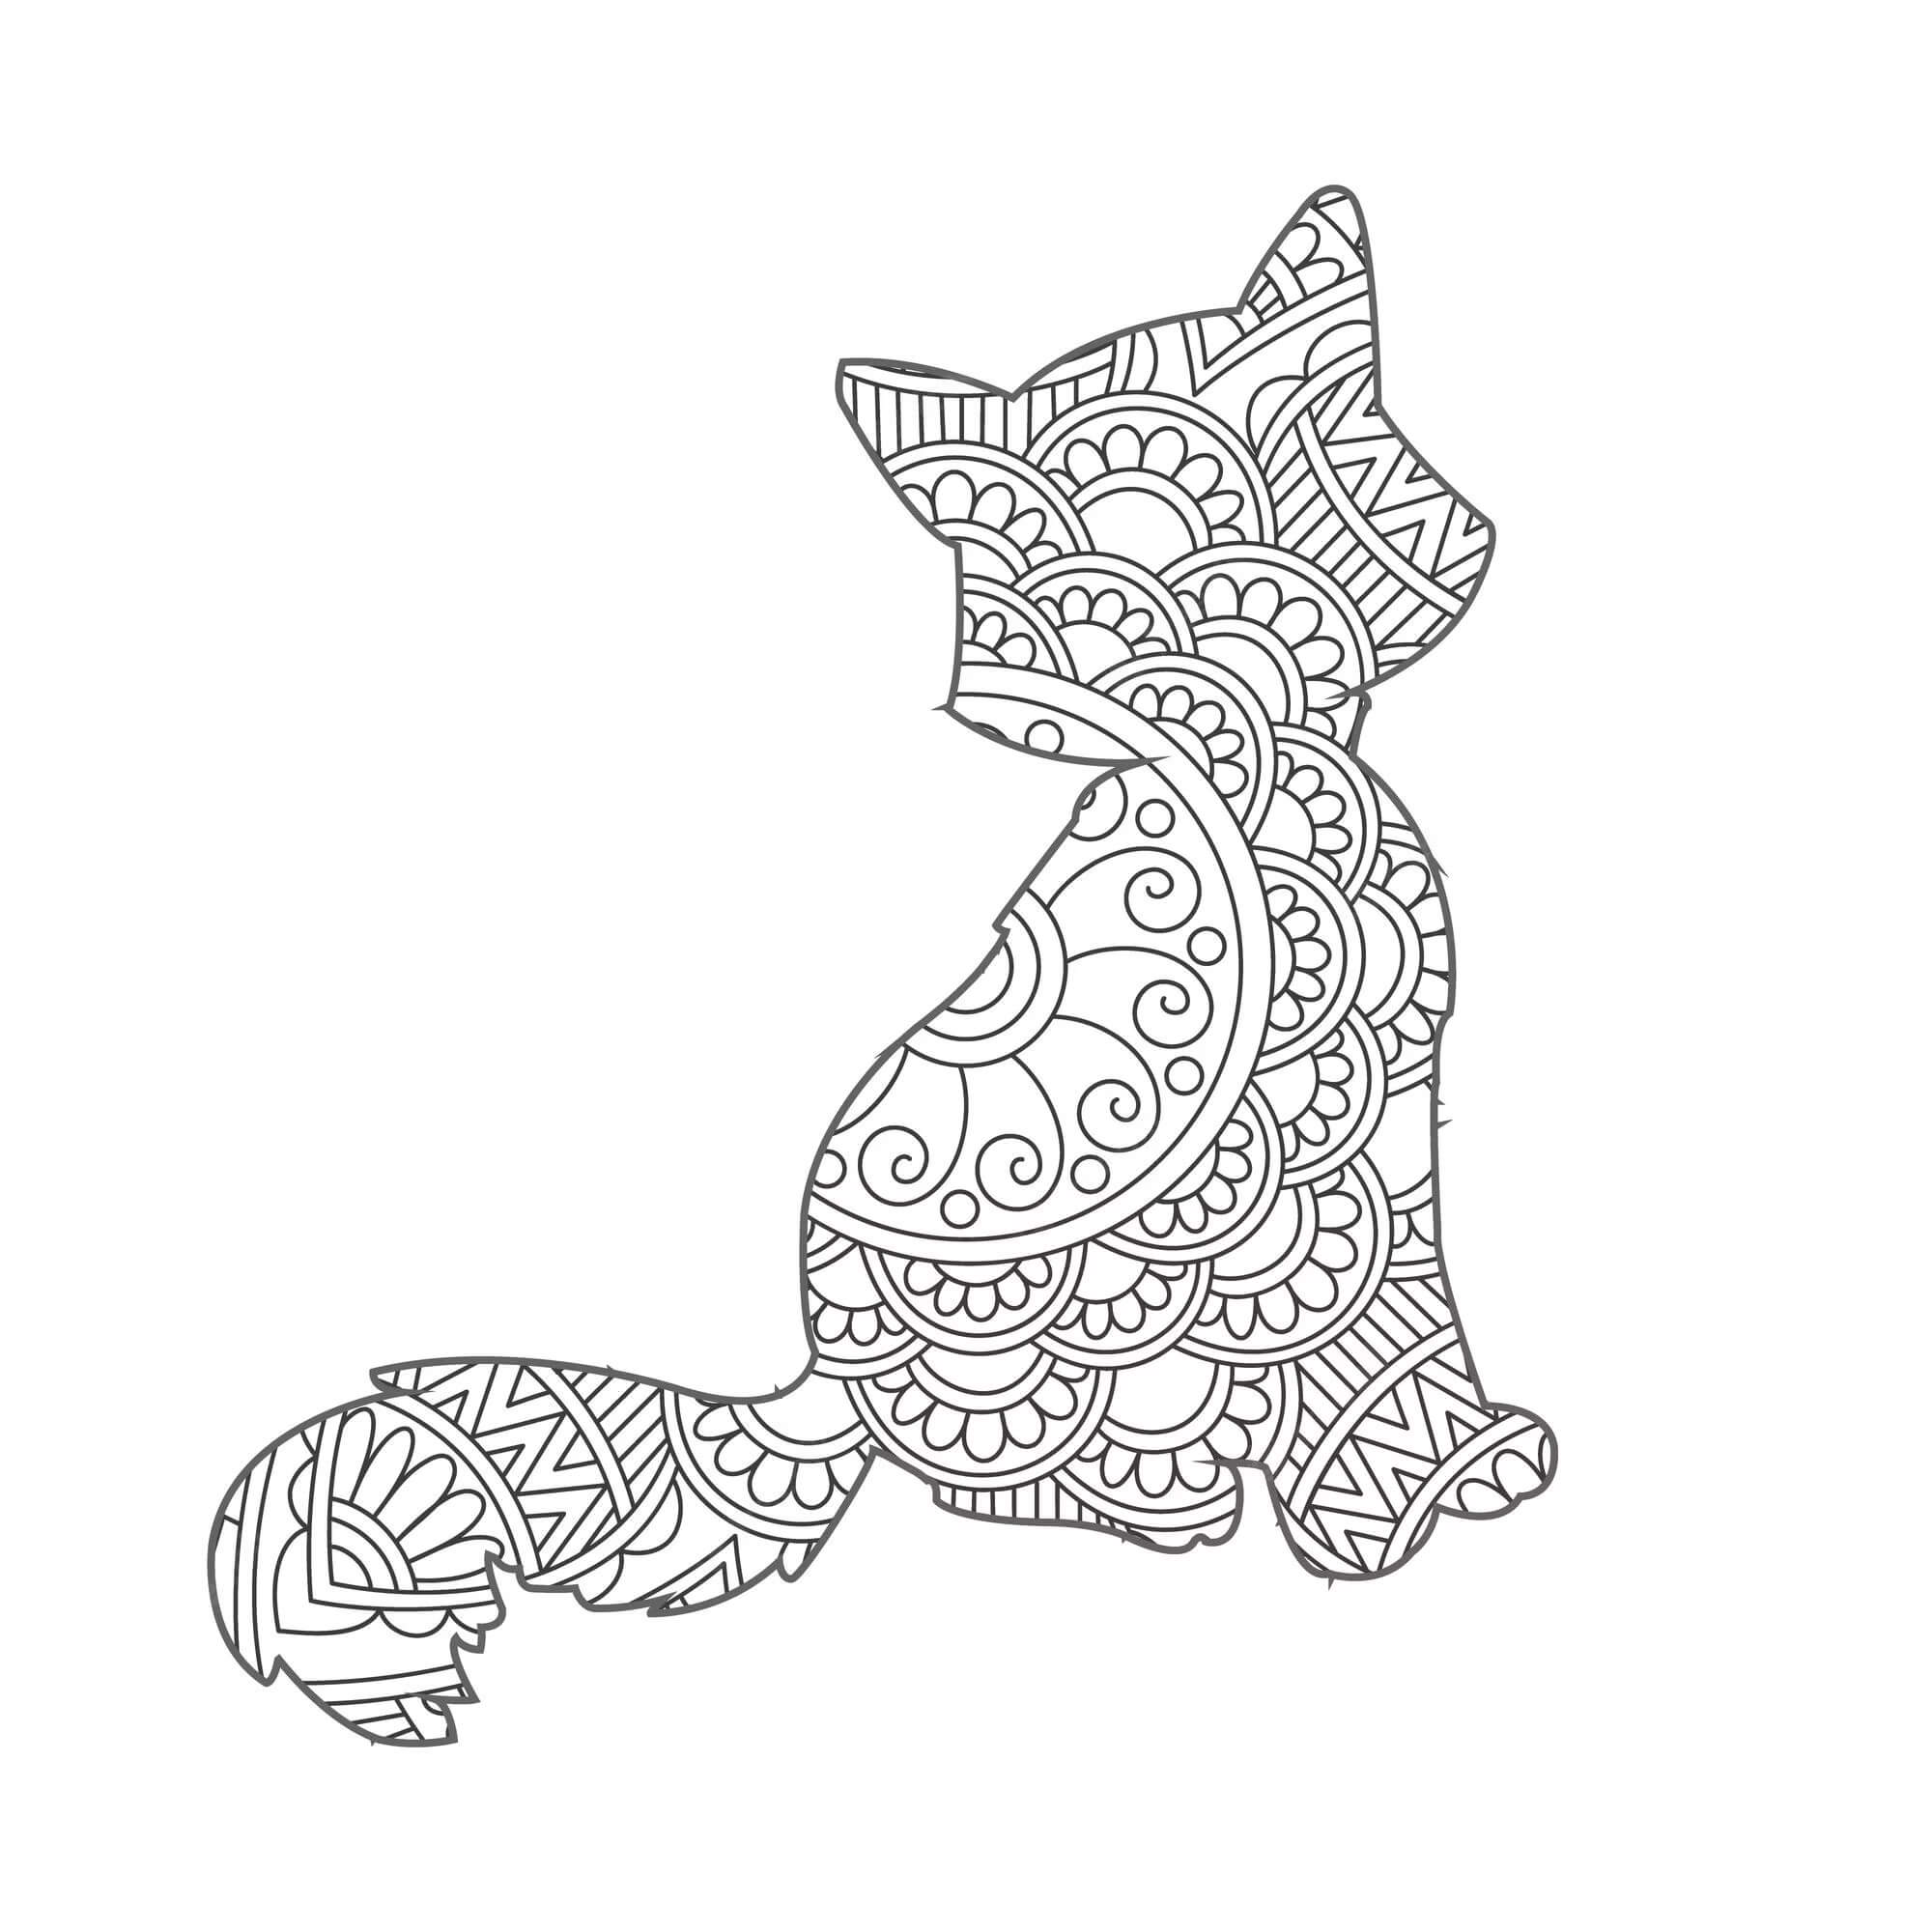 Mandala Cat Coloring Page – Sheet 18 Mandalas